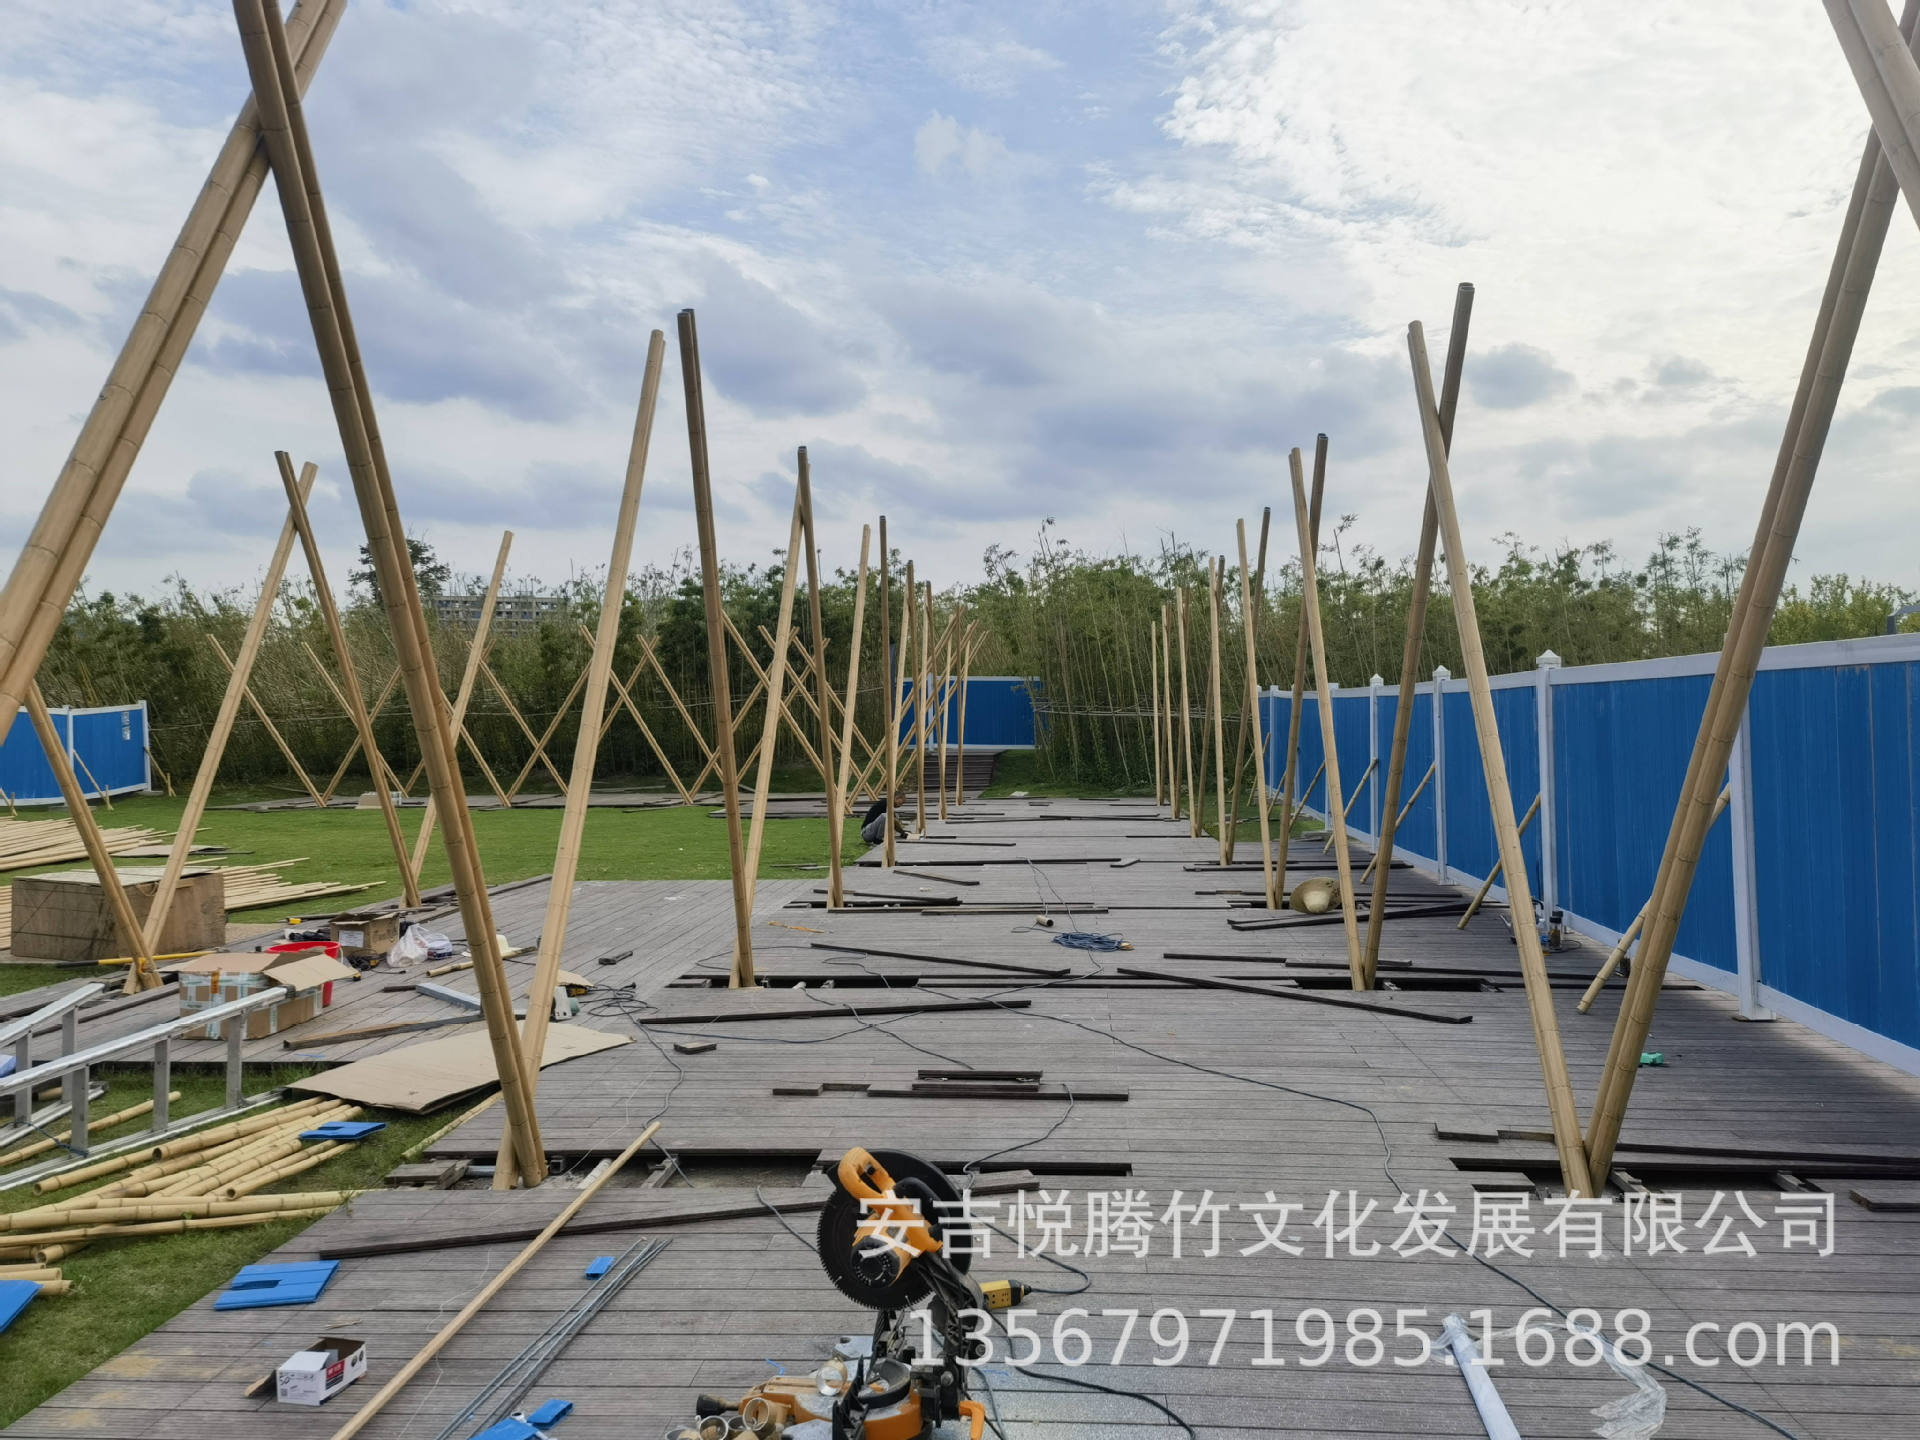 铝竹长廊悦腾竹文化专业设计施工各类竹建筑竹结构竹装置竹装饰详情6